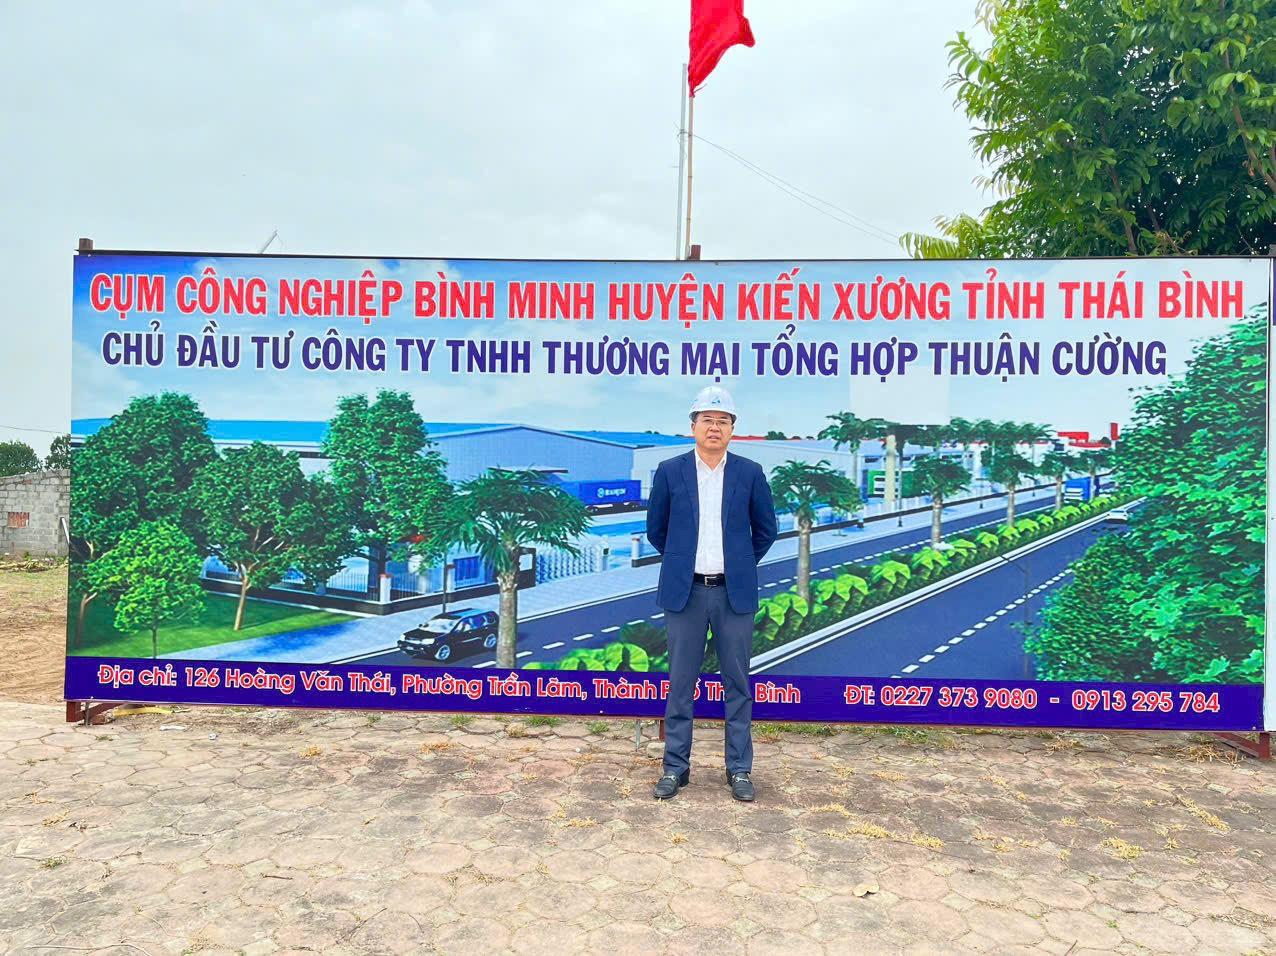 Ông Lương Văn Thuận - Giám đốc công ty TNHH thương mại tổng hợp Thuận Cường